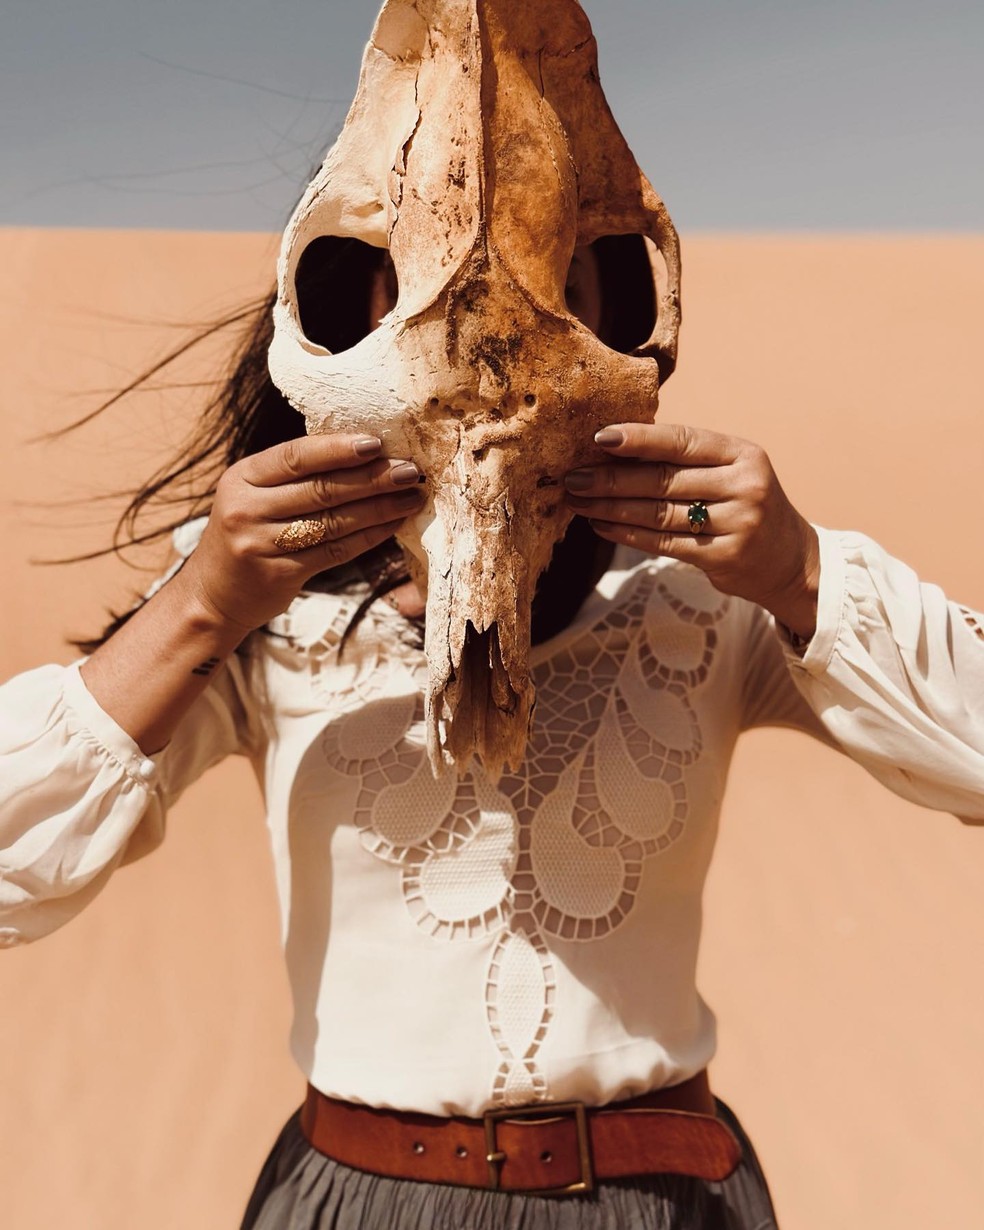 Danni Suzuki posa para fotos macabras no meio do deserto do Saara  — Foto: reprodução/instagram